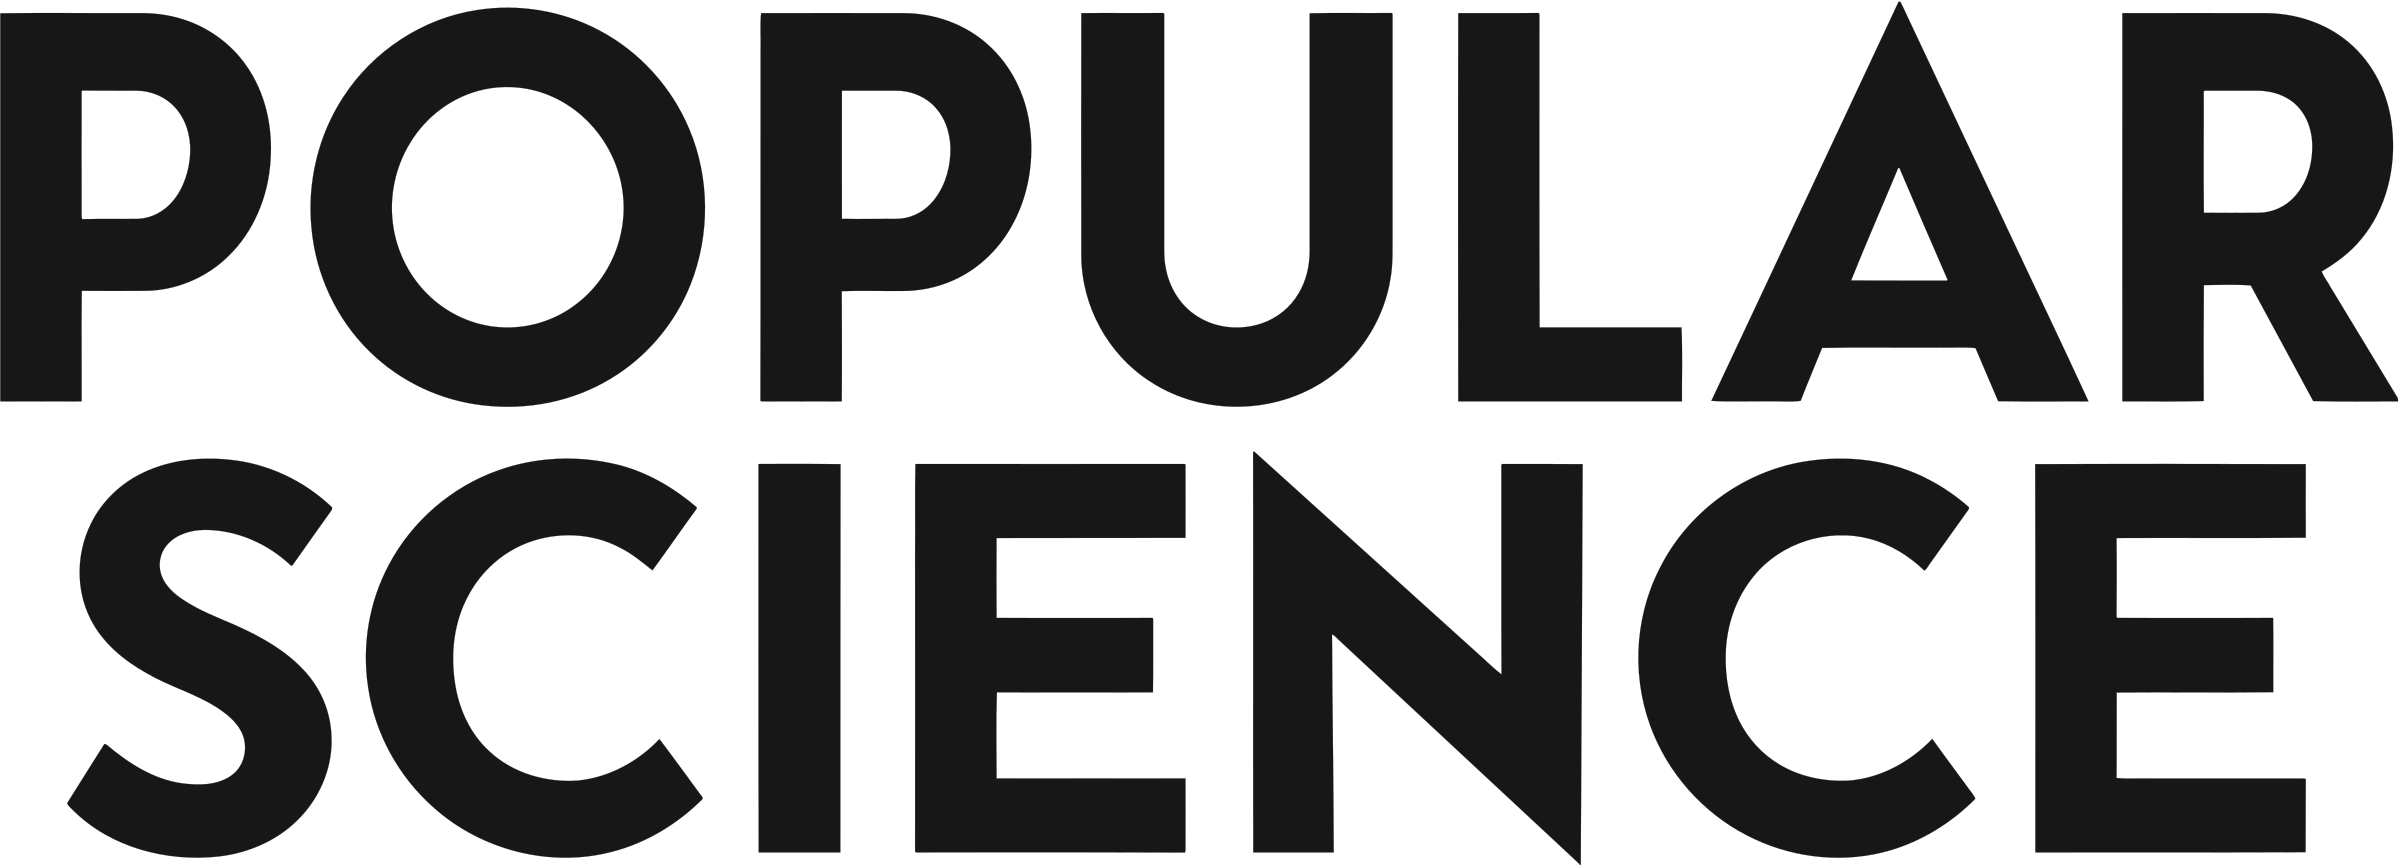 Popular Black Logo - Popular Science Logo PNG Transparent & SVG Vector